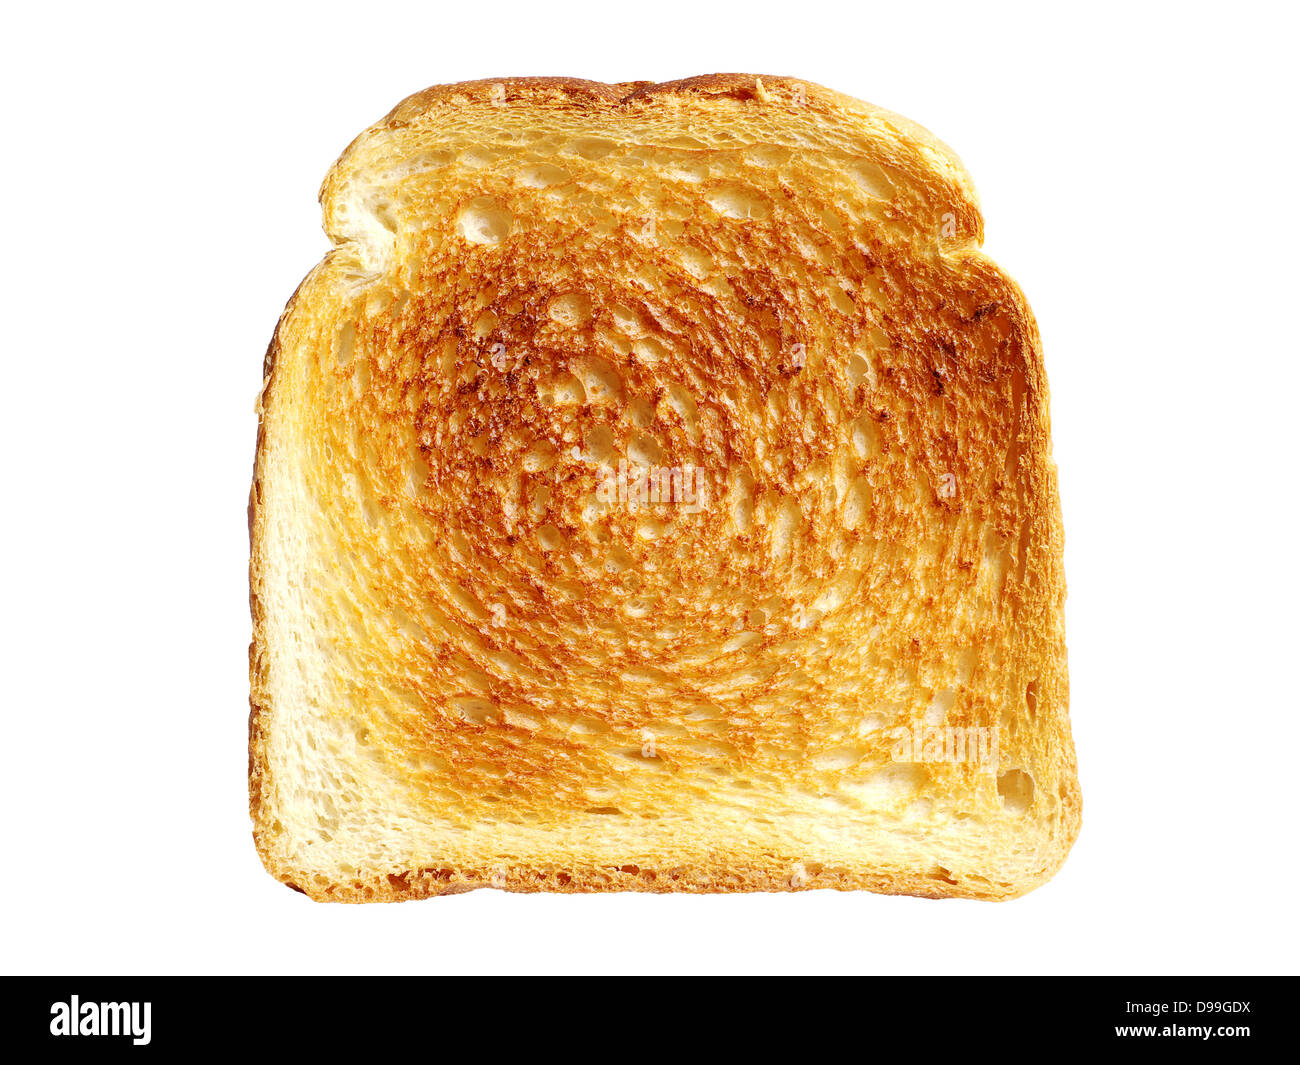 Кусок тостового хлеба. Хлеб жареный на белом фоне. Хлеб белый ломтик на белом фоне. Хлеб тостовый на белом фоне.